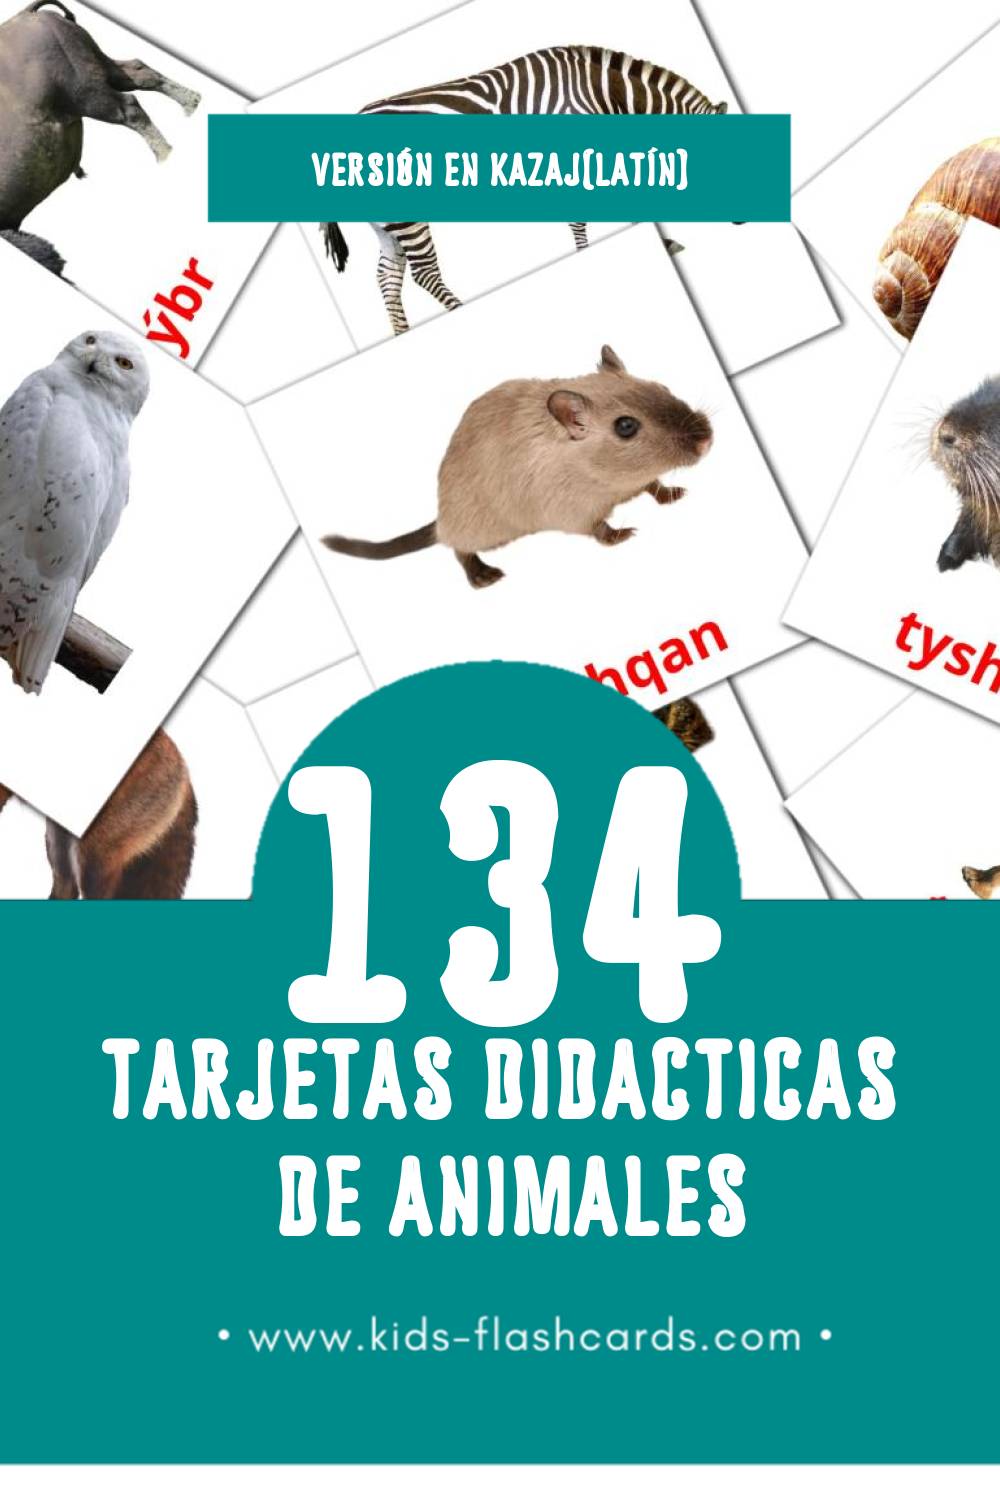 Tarjetas visuales de Janýarlar para niños pequeños (134 tarjetas en Kazaj(latín))